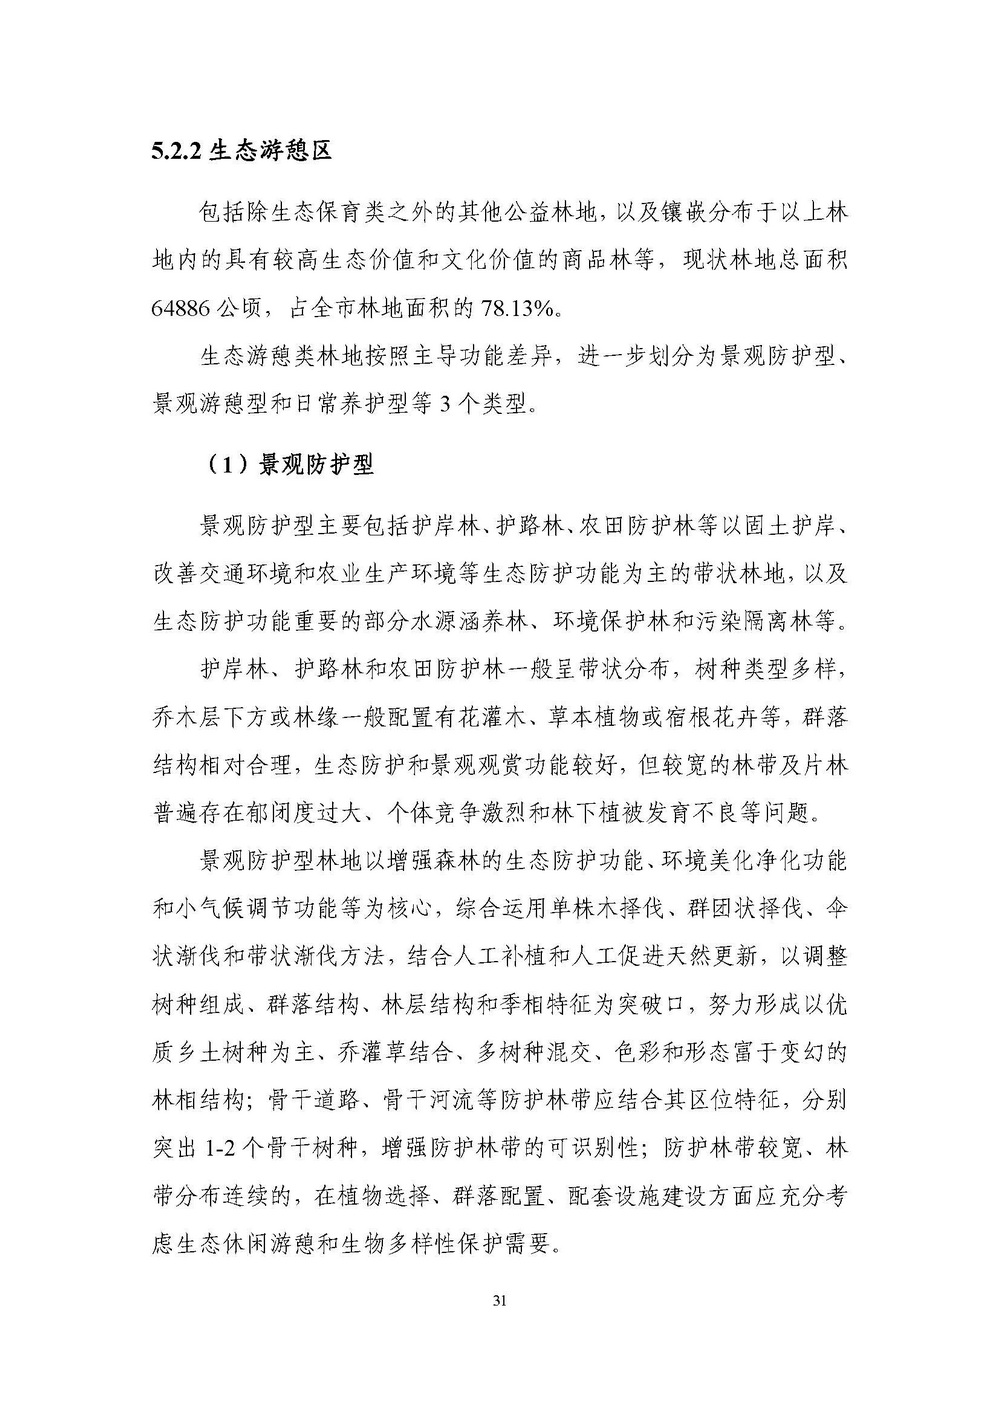 上海市森林和林地保护利用规划文本 公开稿 附图_页面_34.jpg